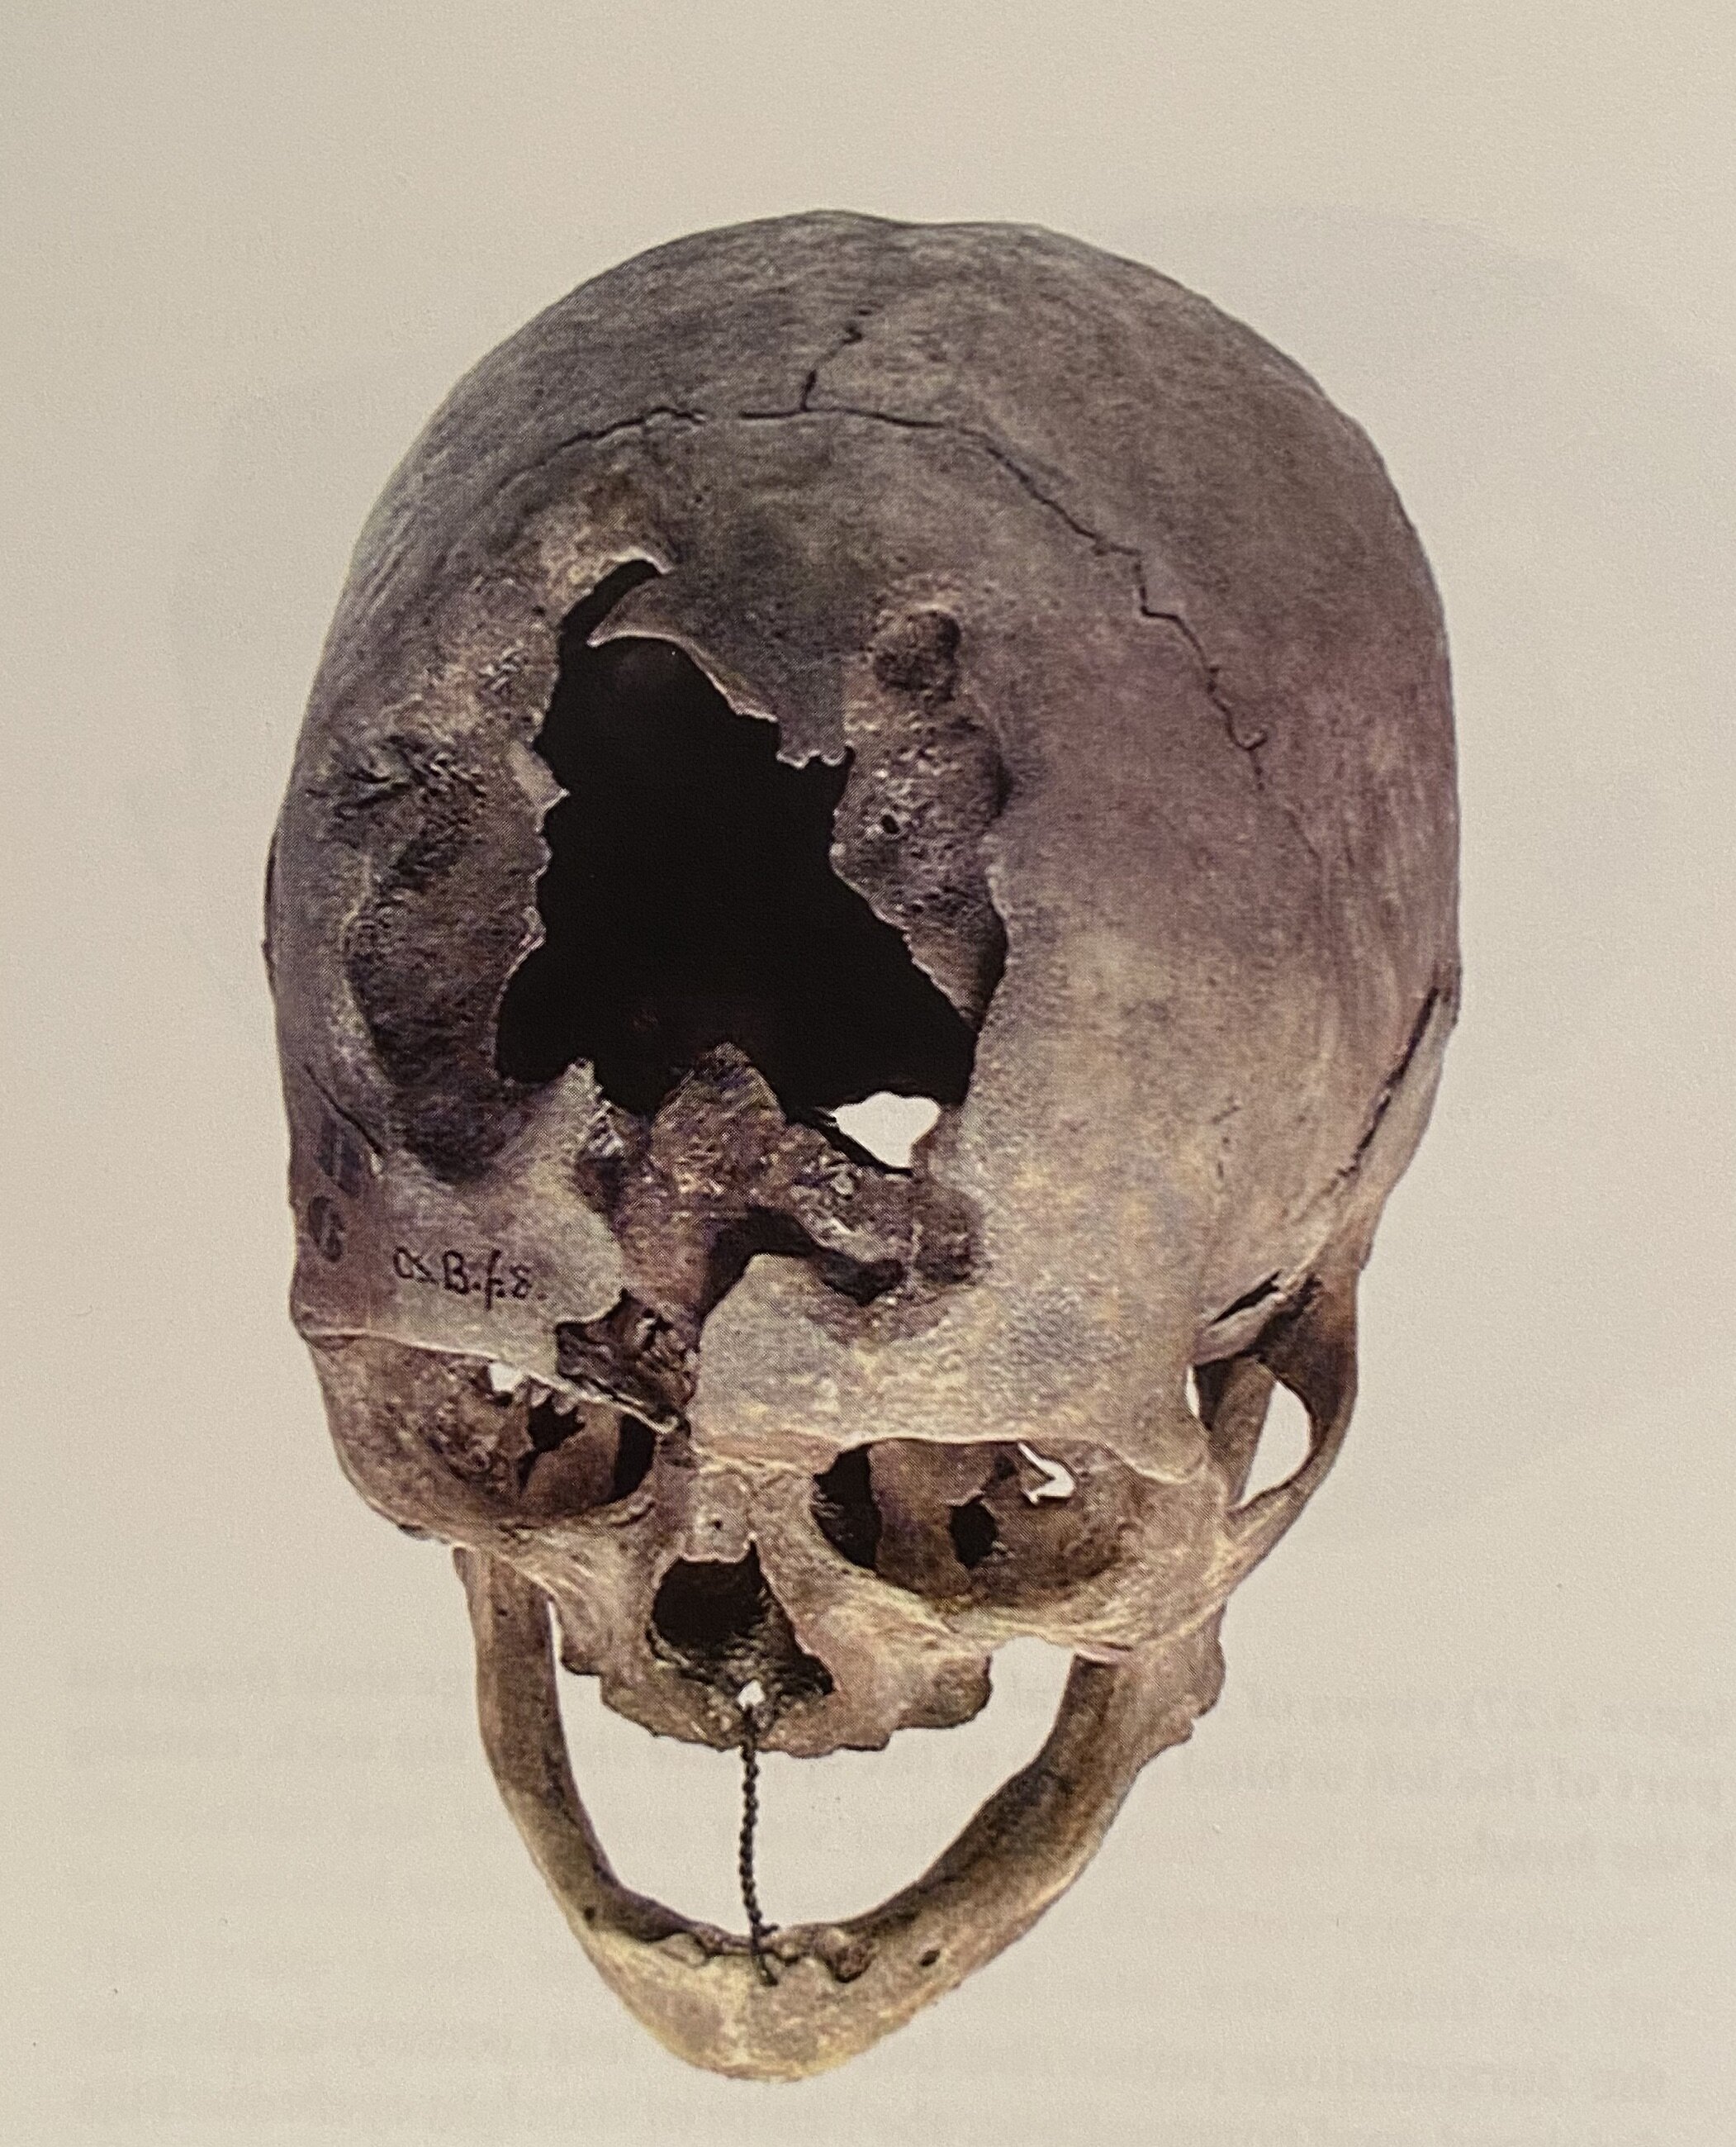 Fig. 1 -Gunshot wound to skull, Waterloo